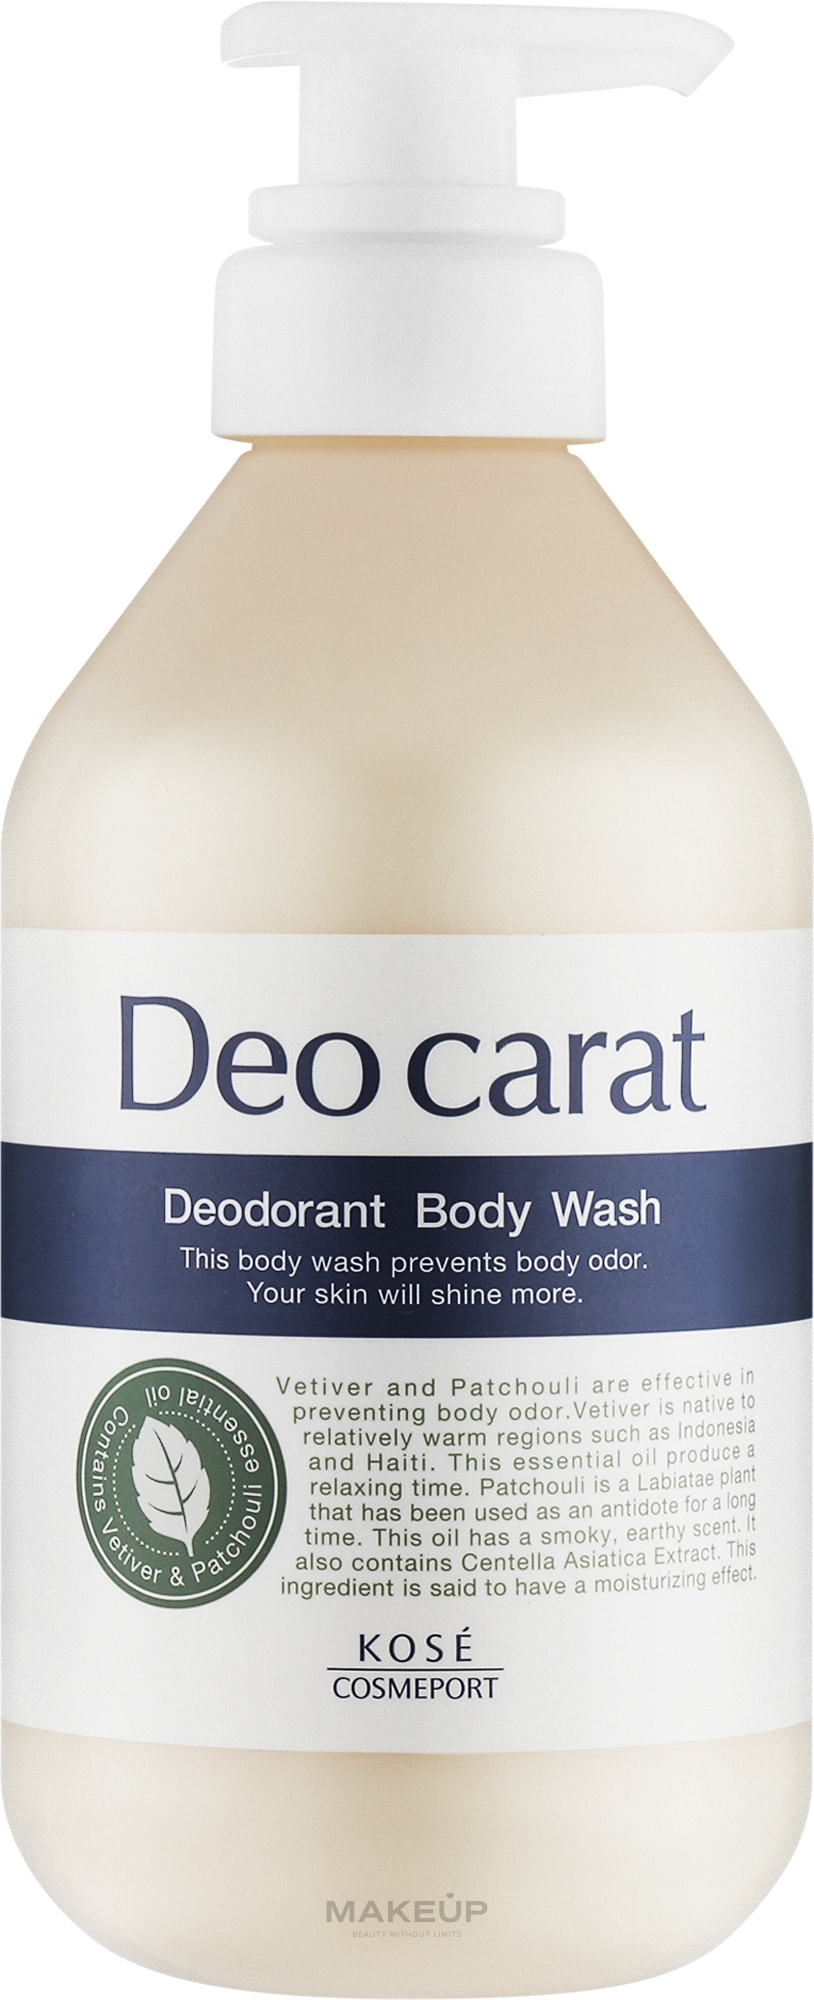 Гель для душа против запахов тела - Kose Cosmeport Deo Carat Deodorant Body Wash — фото 350ml